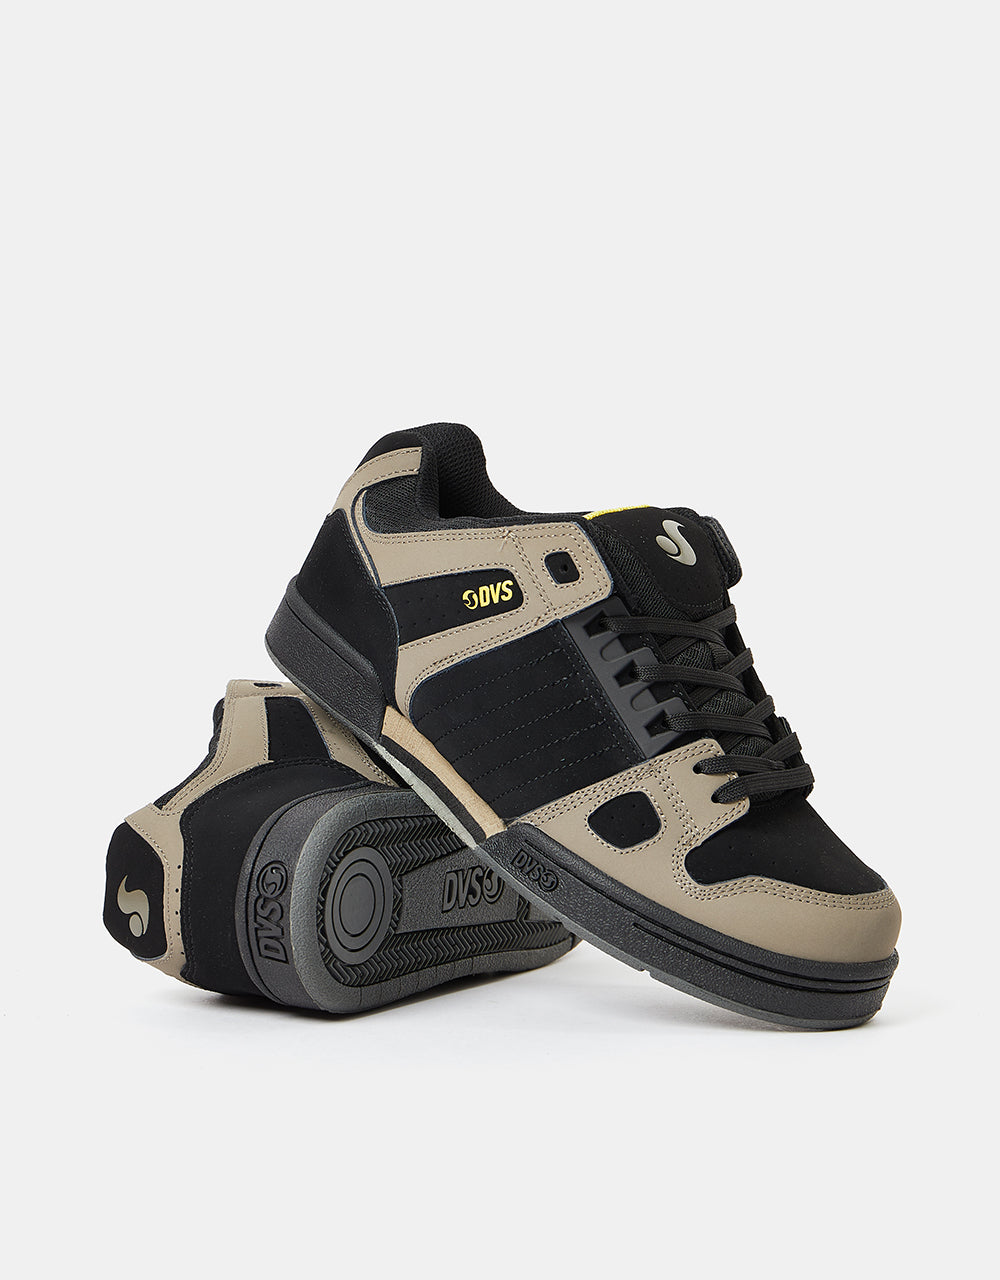 DVS Celsius Skate Shoes - Brindle/Black/Yellow Nubuck